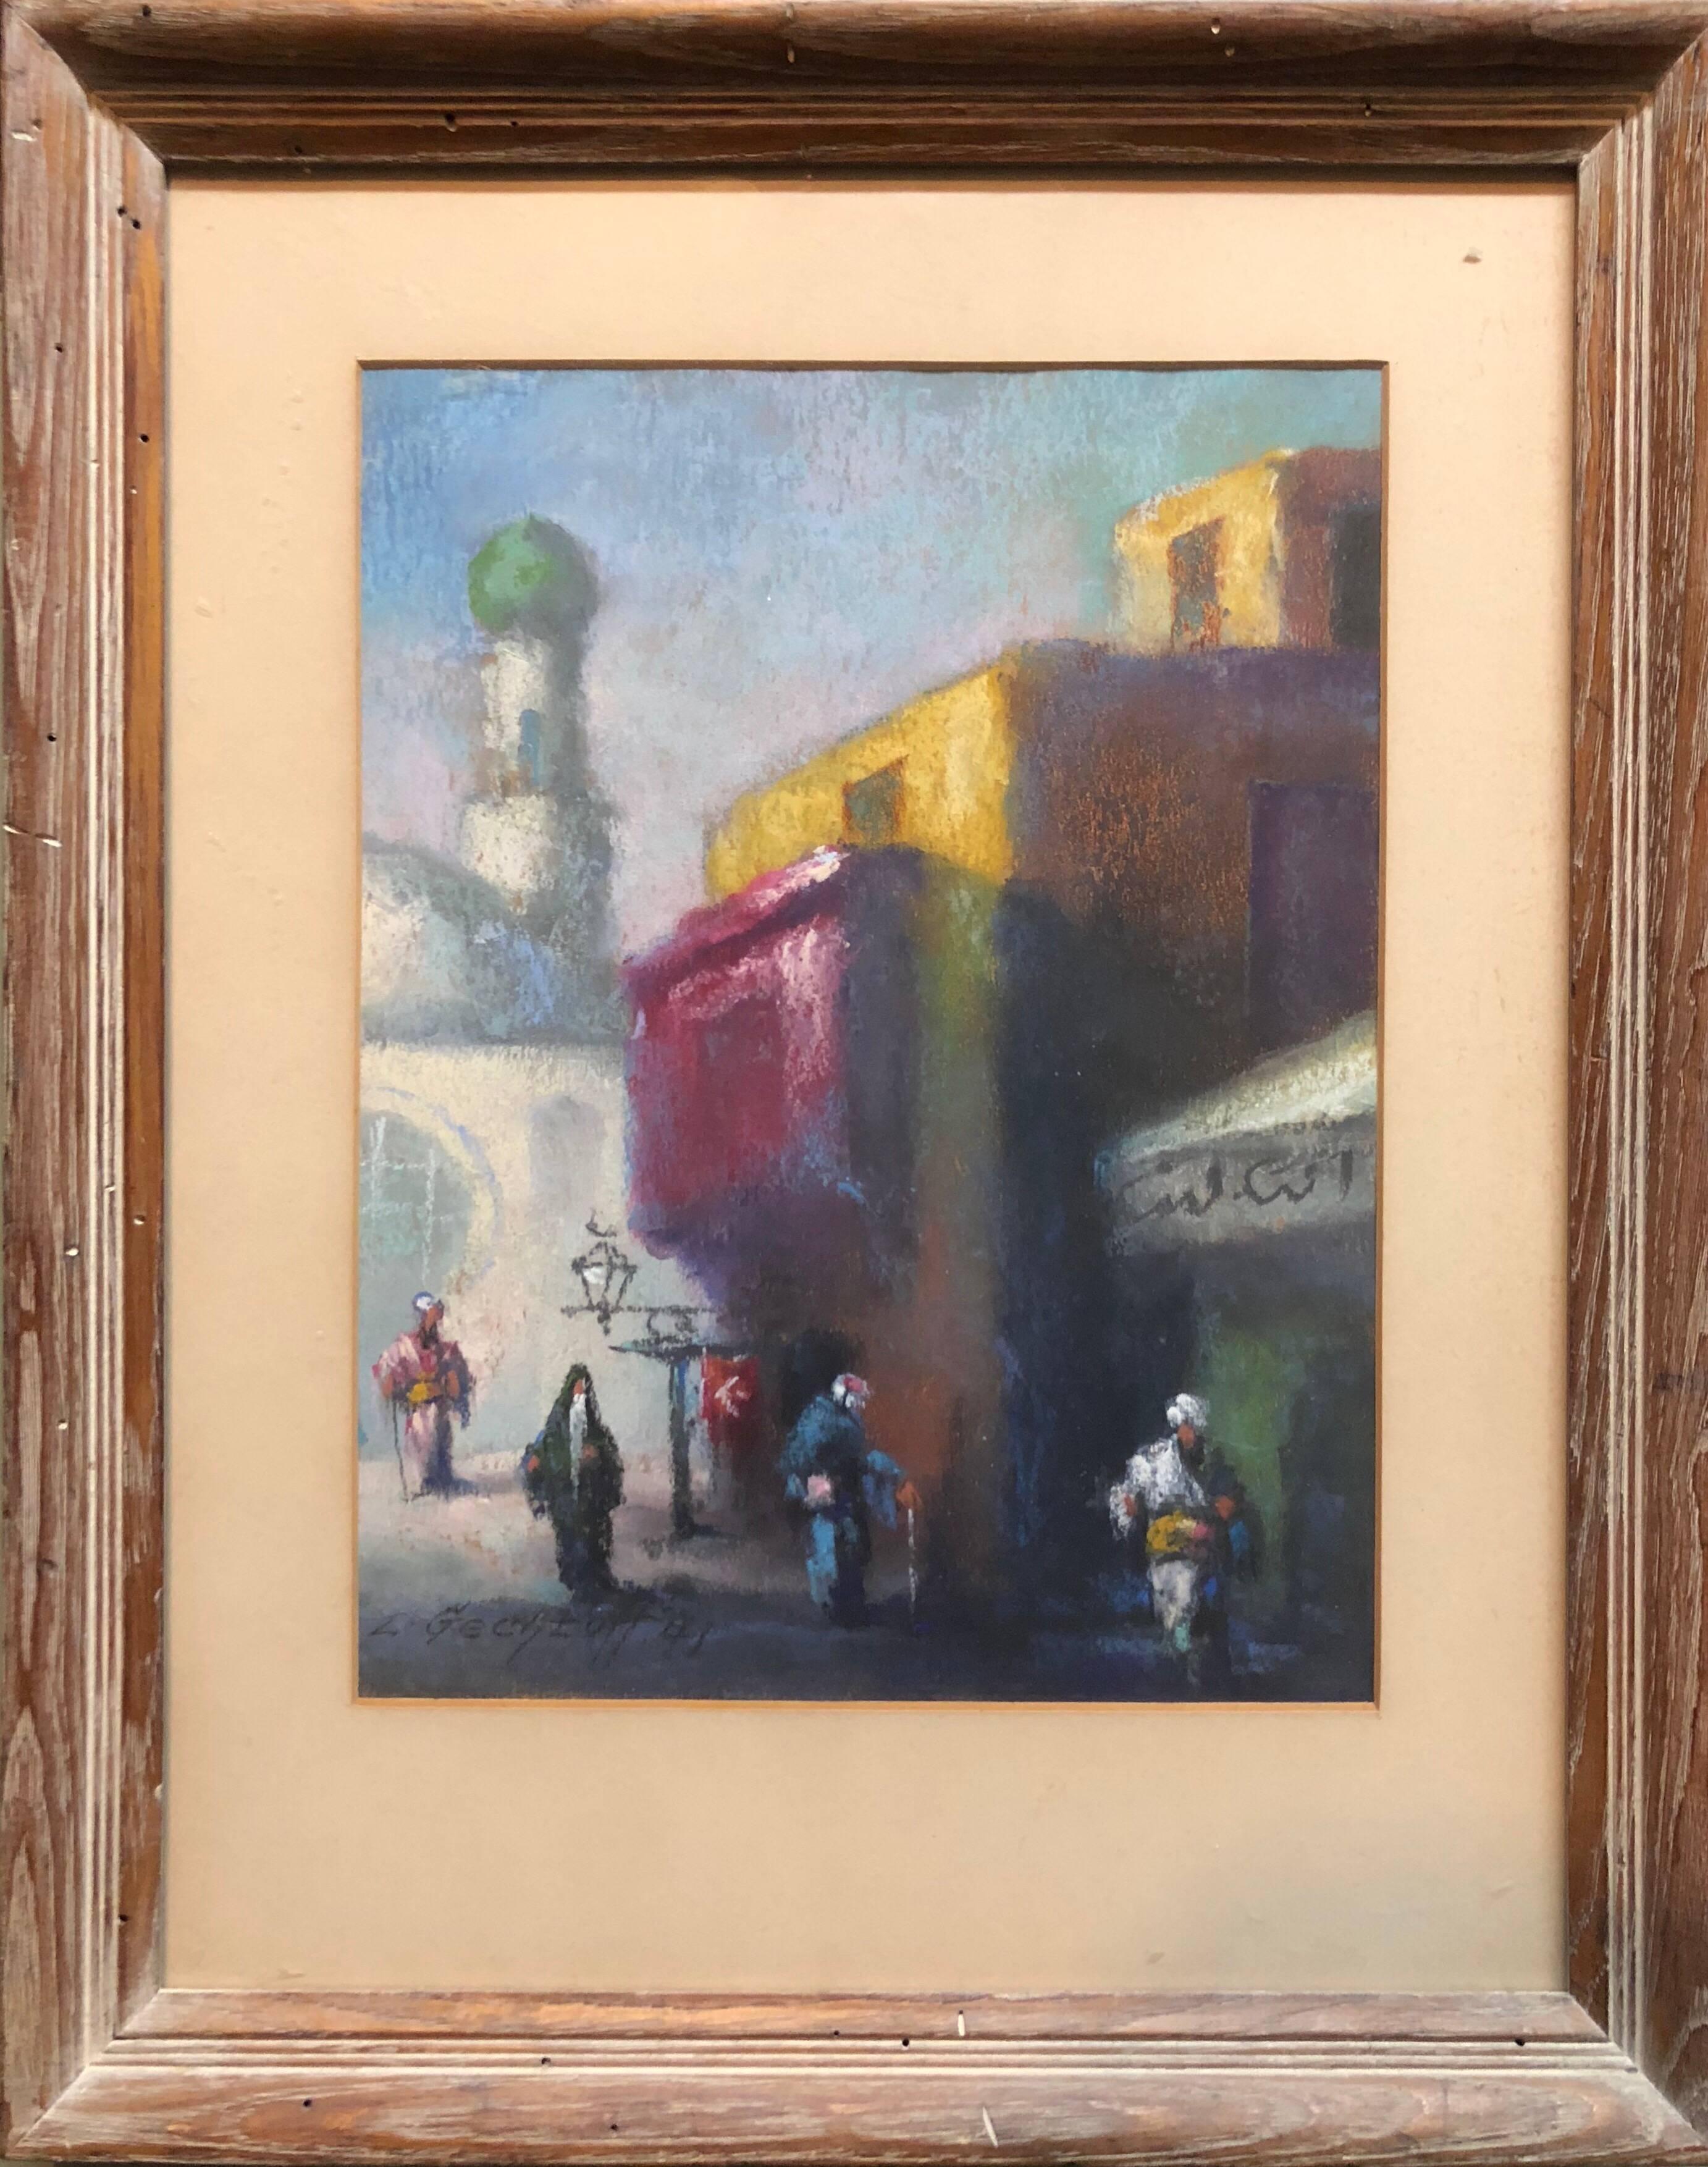 Orientalische Marktstraßensszene aus Kairo, Nahen Osten – Painting von Leonid Gechtoff